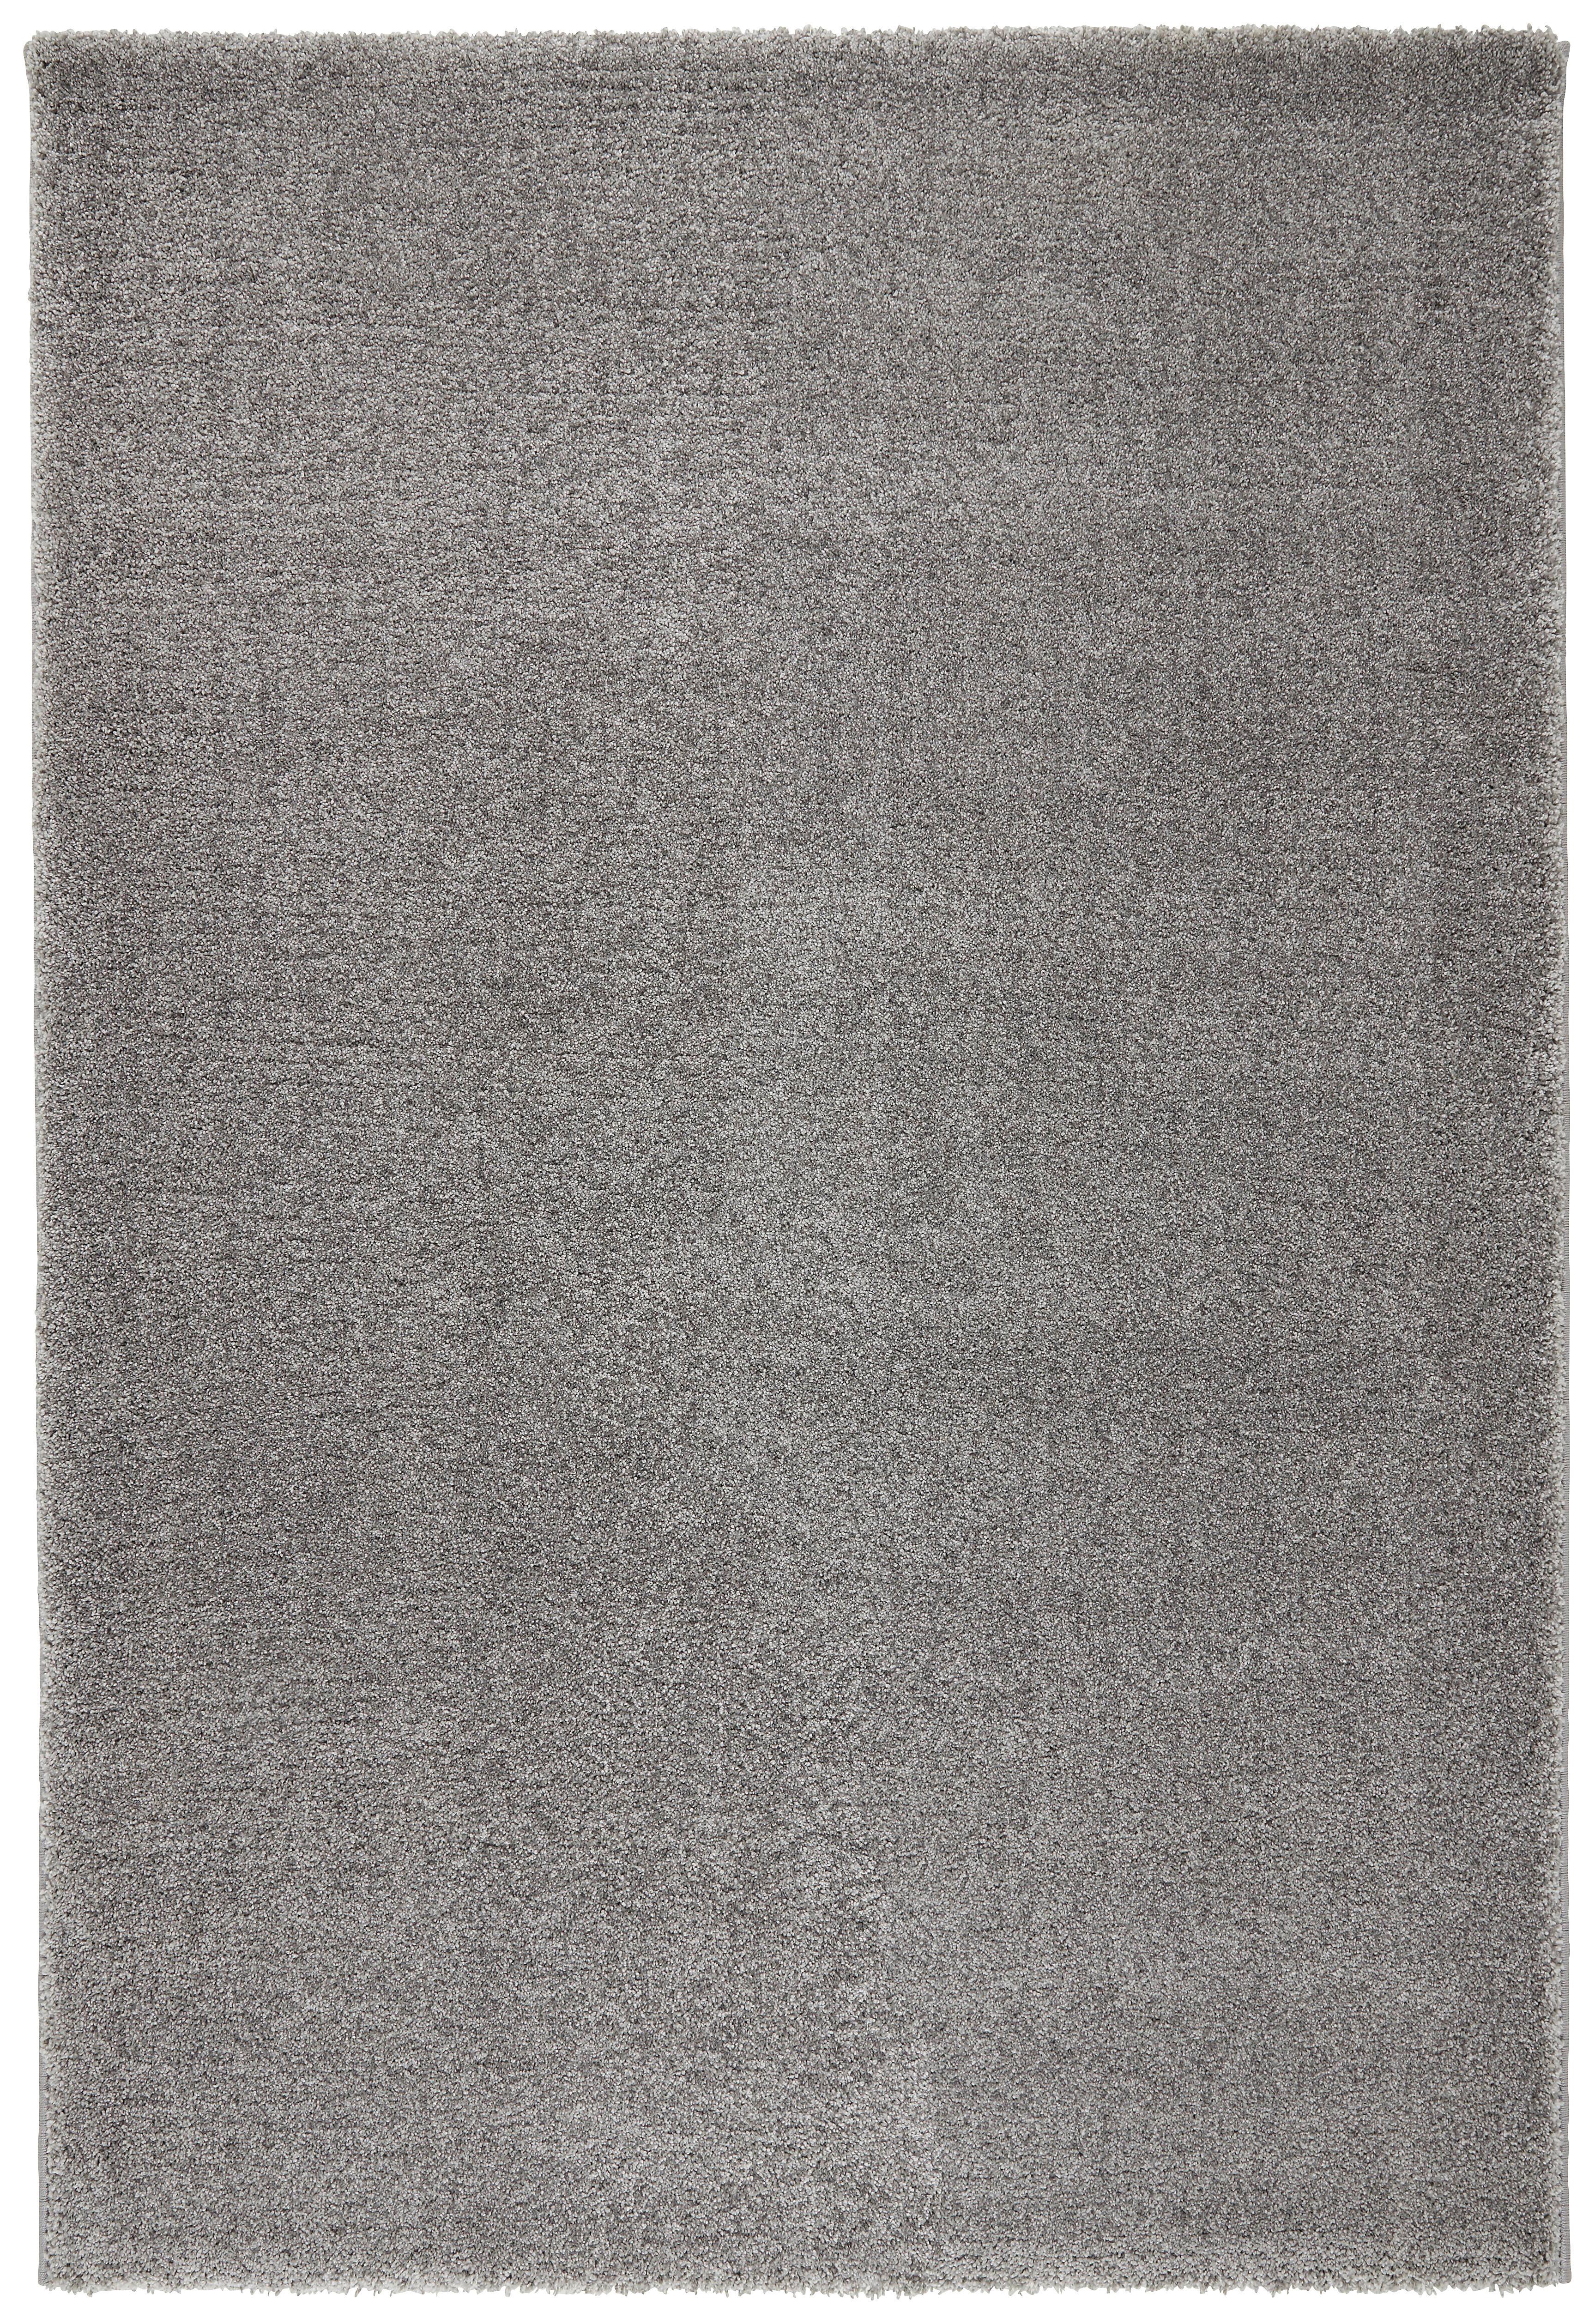 Tkaný Koberec Rubin 1, 80/150cm, Sv.šedá - světle šedá, Moderní (80/150cm) - Modern Living